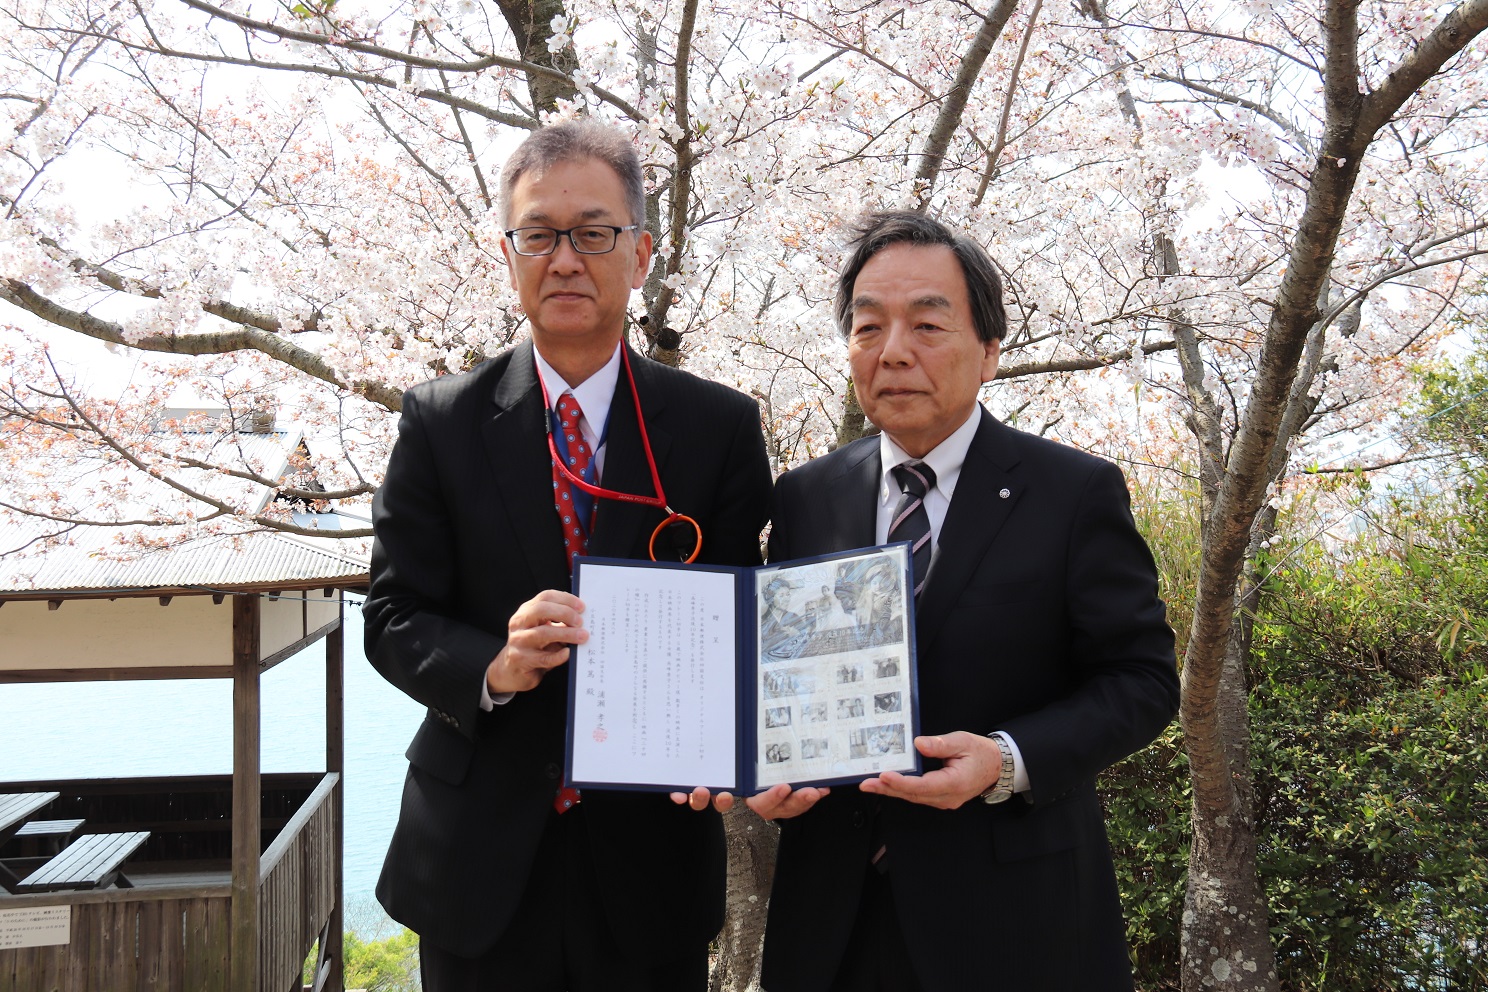 記念切手贈呈式にて「オリジナルフレーム切手」を持って日本郵便の職員と記念撮影をする松本町長の写真